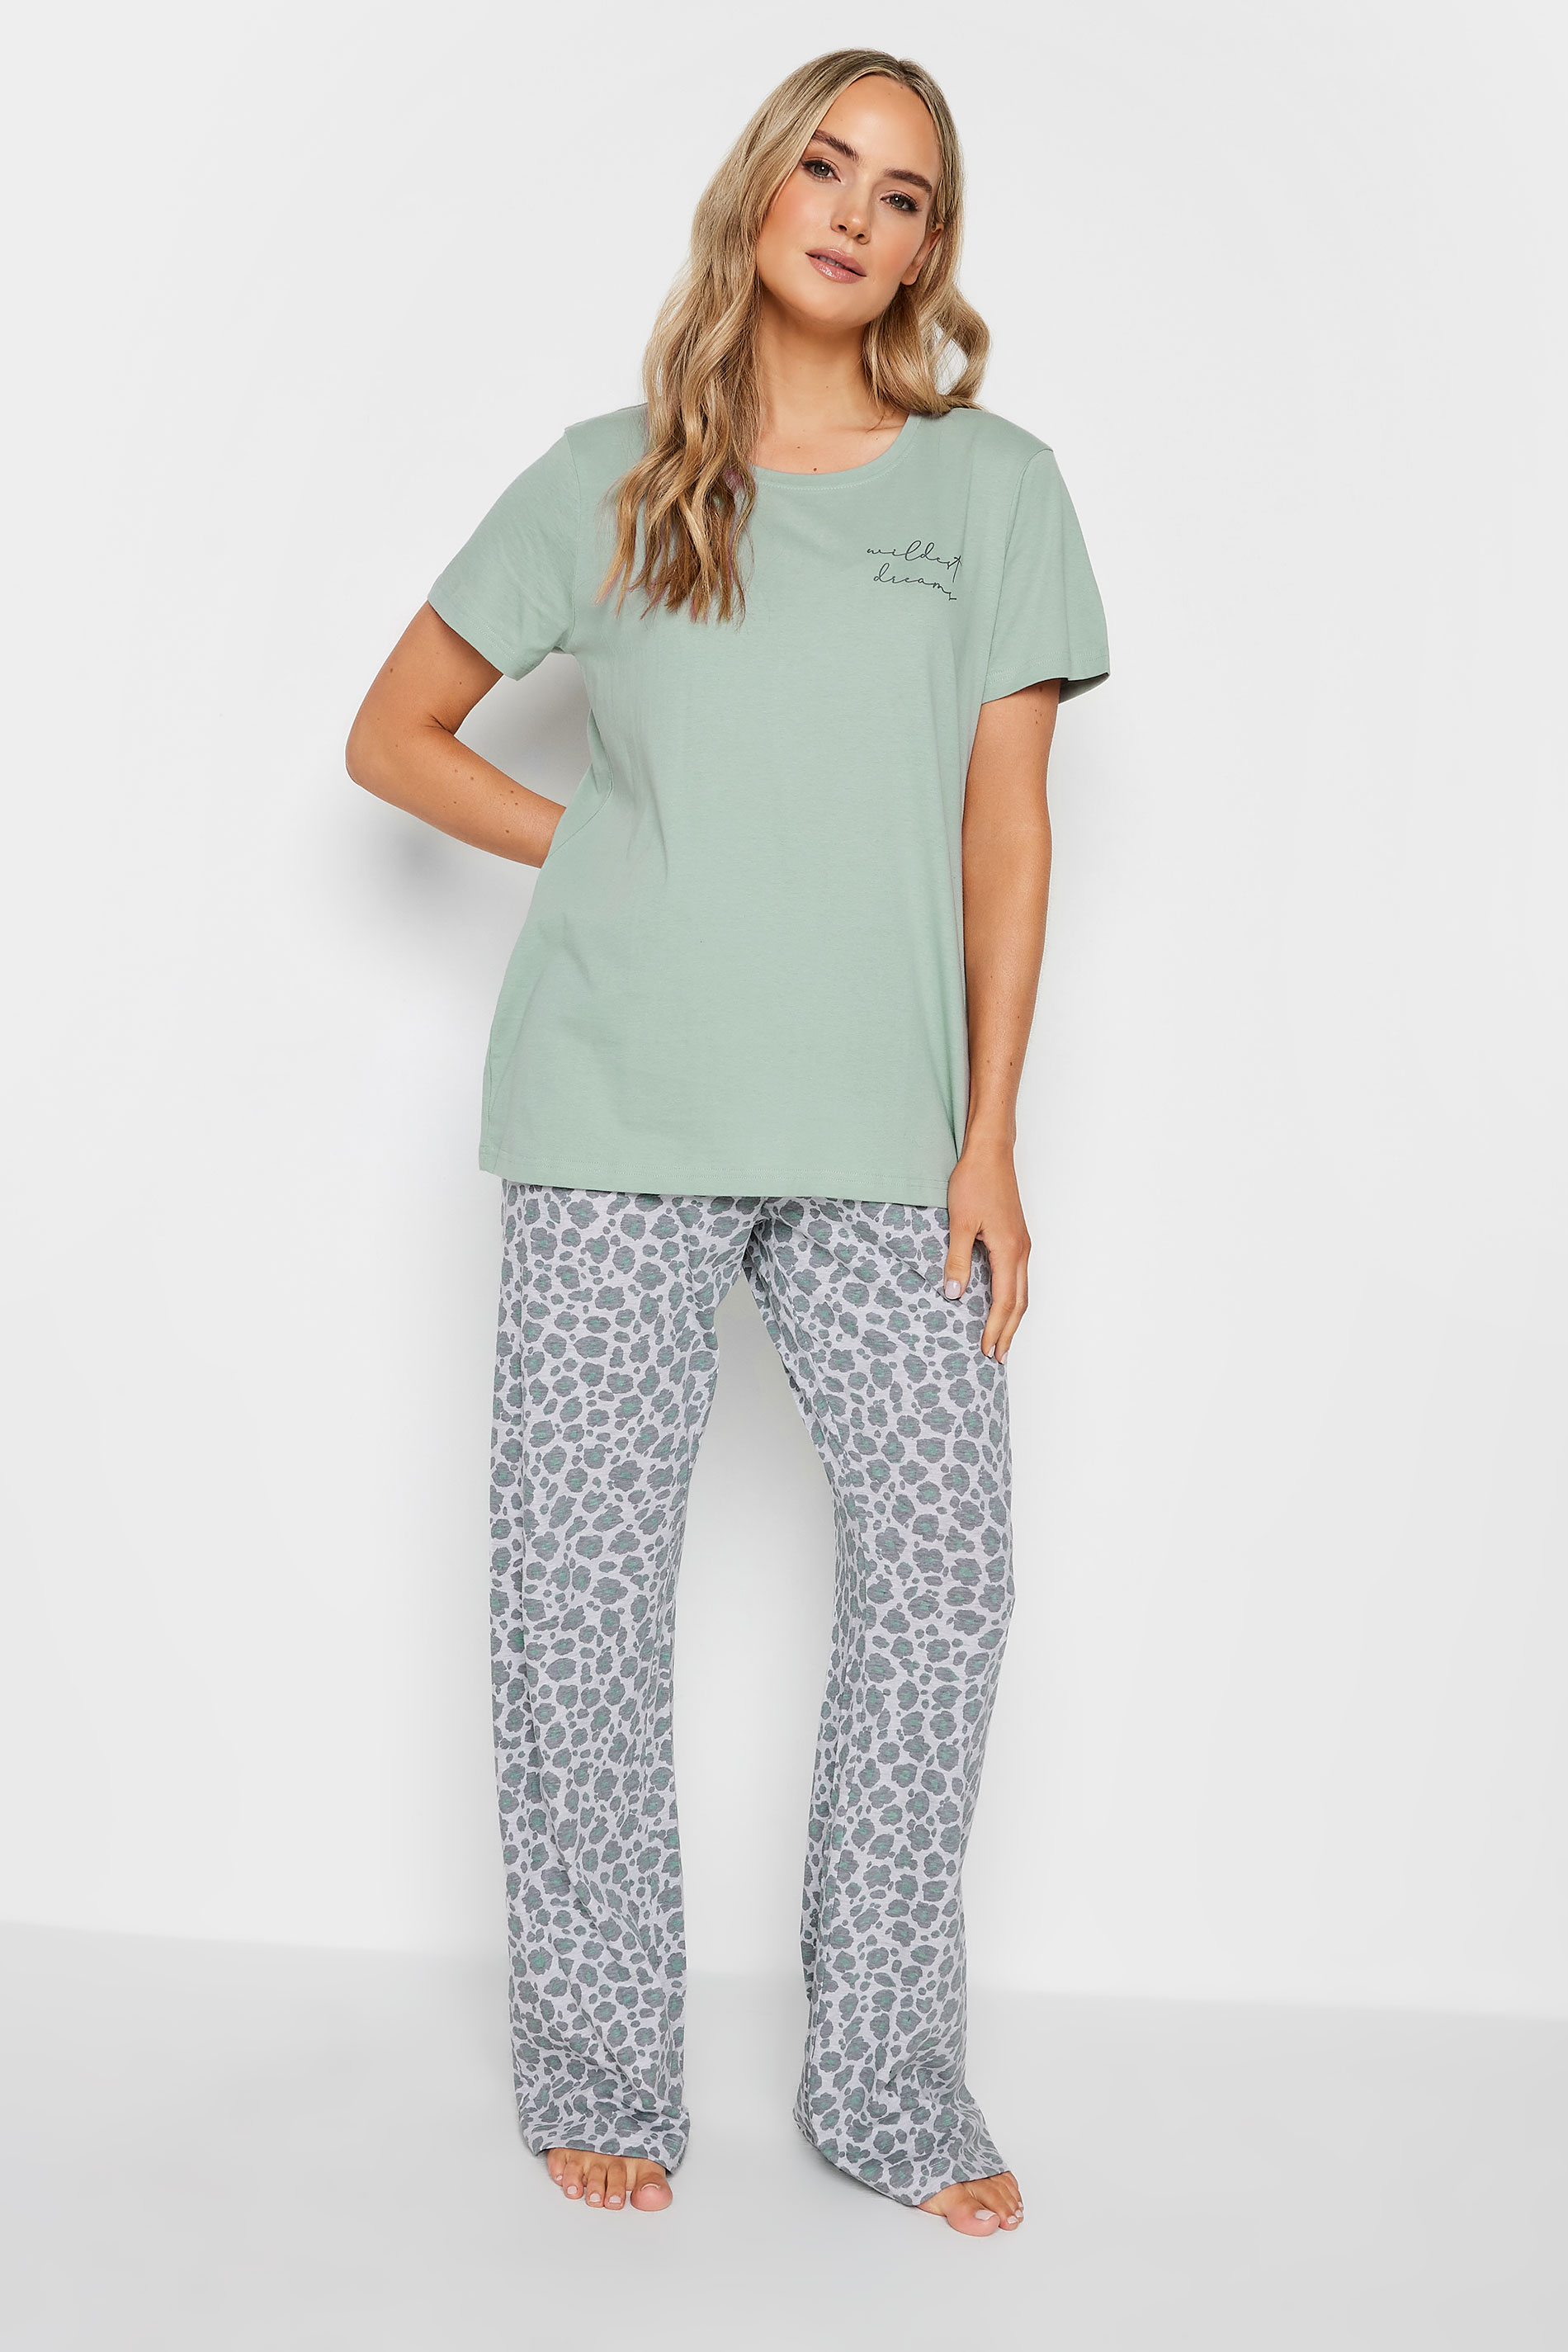 LTS Tall Green 'Wildest Dreams' Slogan Leopard Print Pyjama Set | Long Tall Sally  2